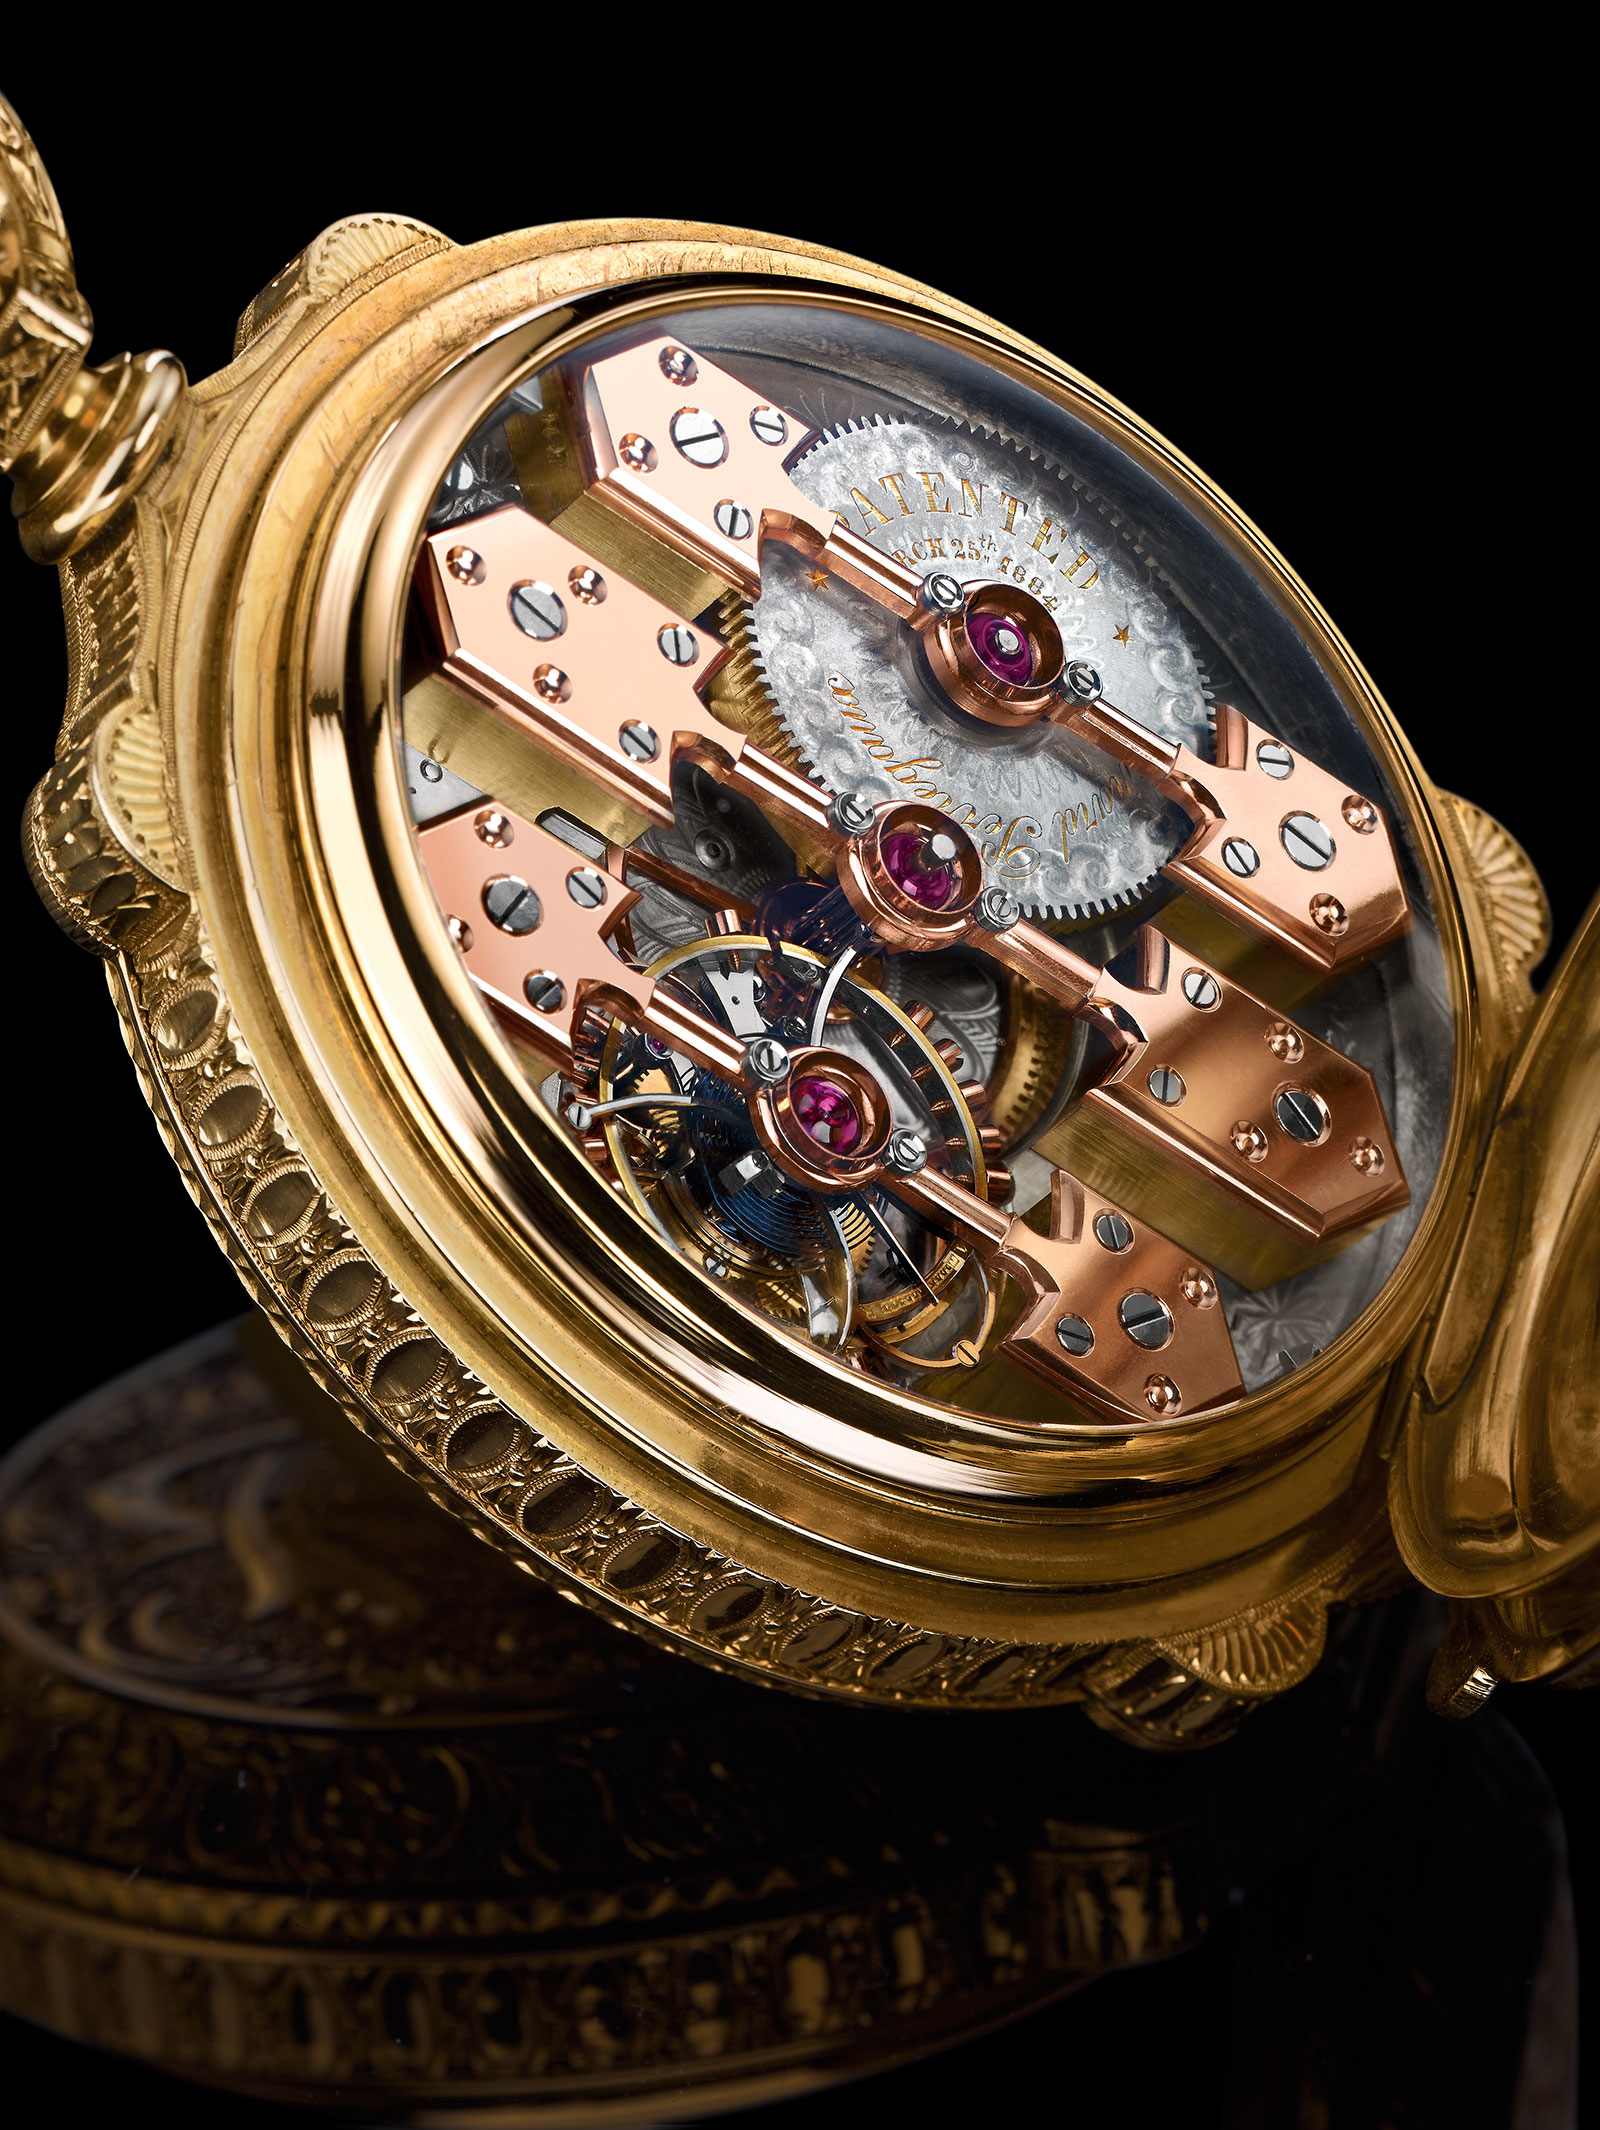 Girard-Perregaux La Esmeralda pocket watch